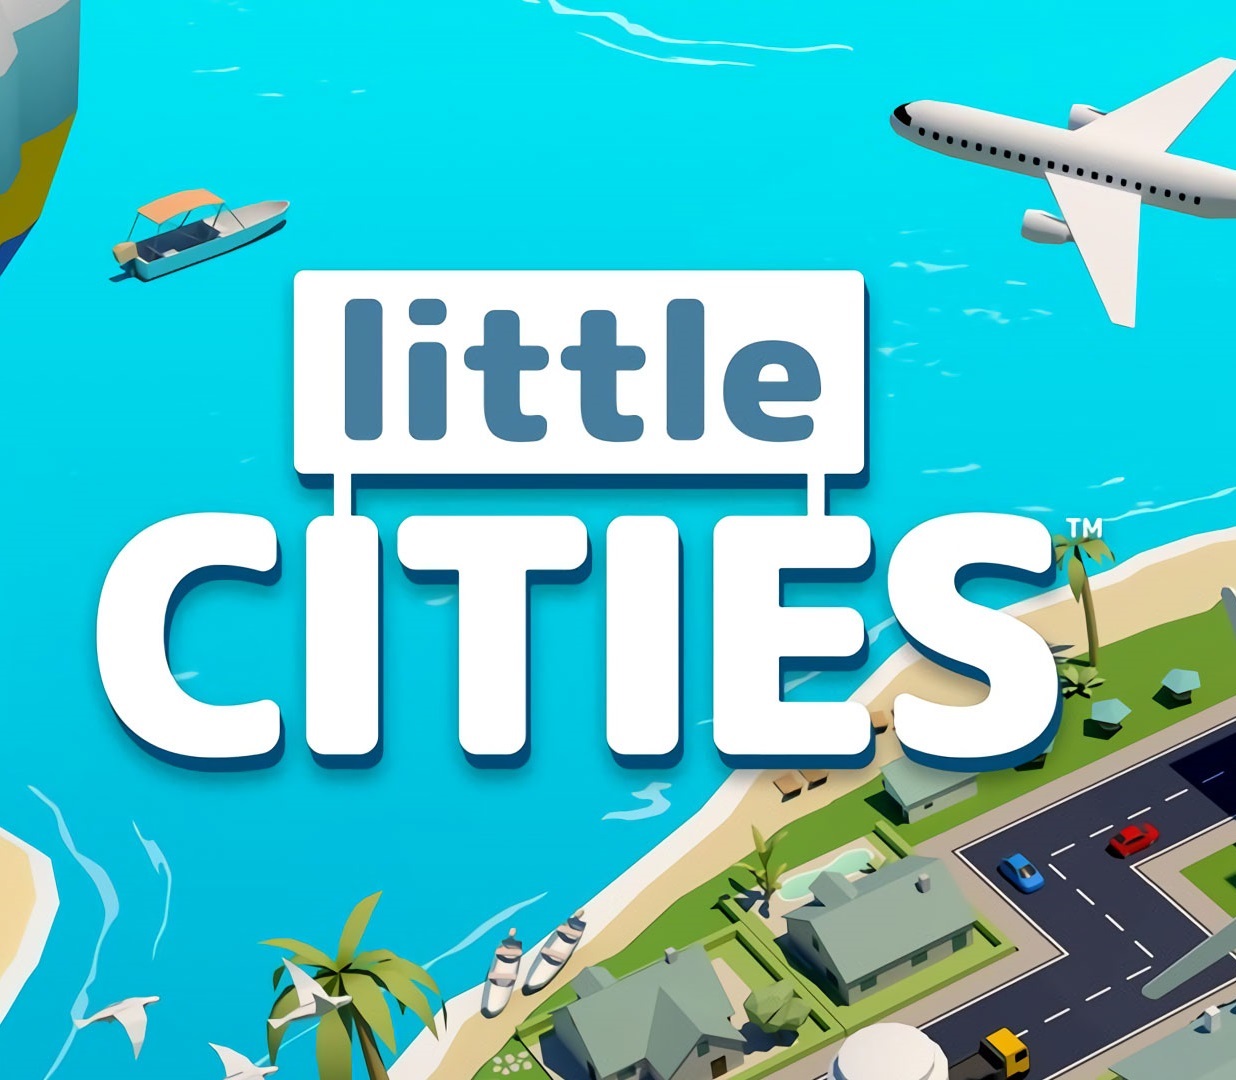 Little CITIES